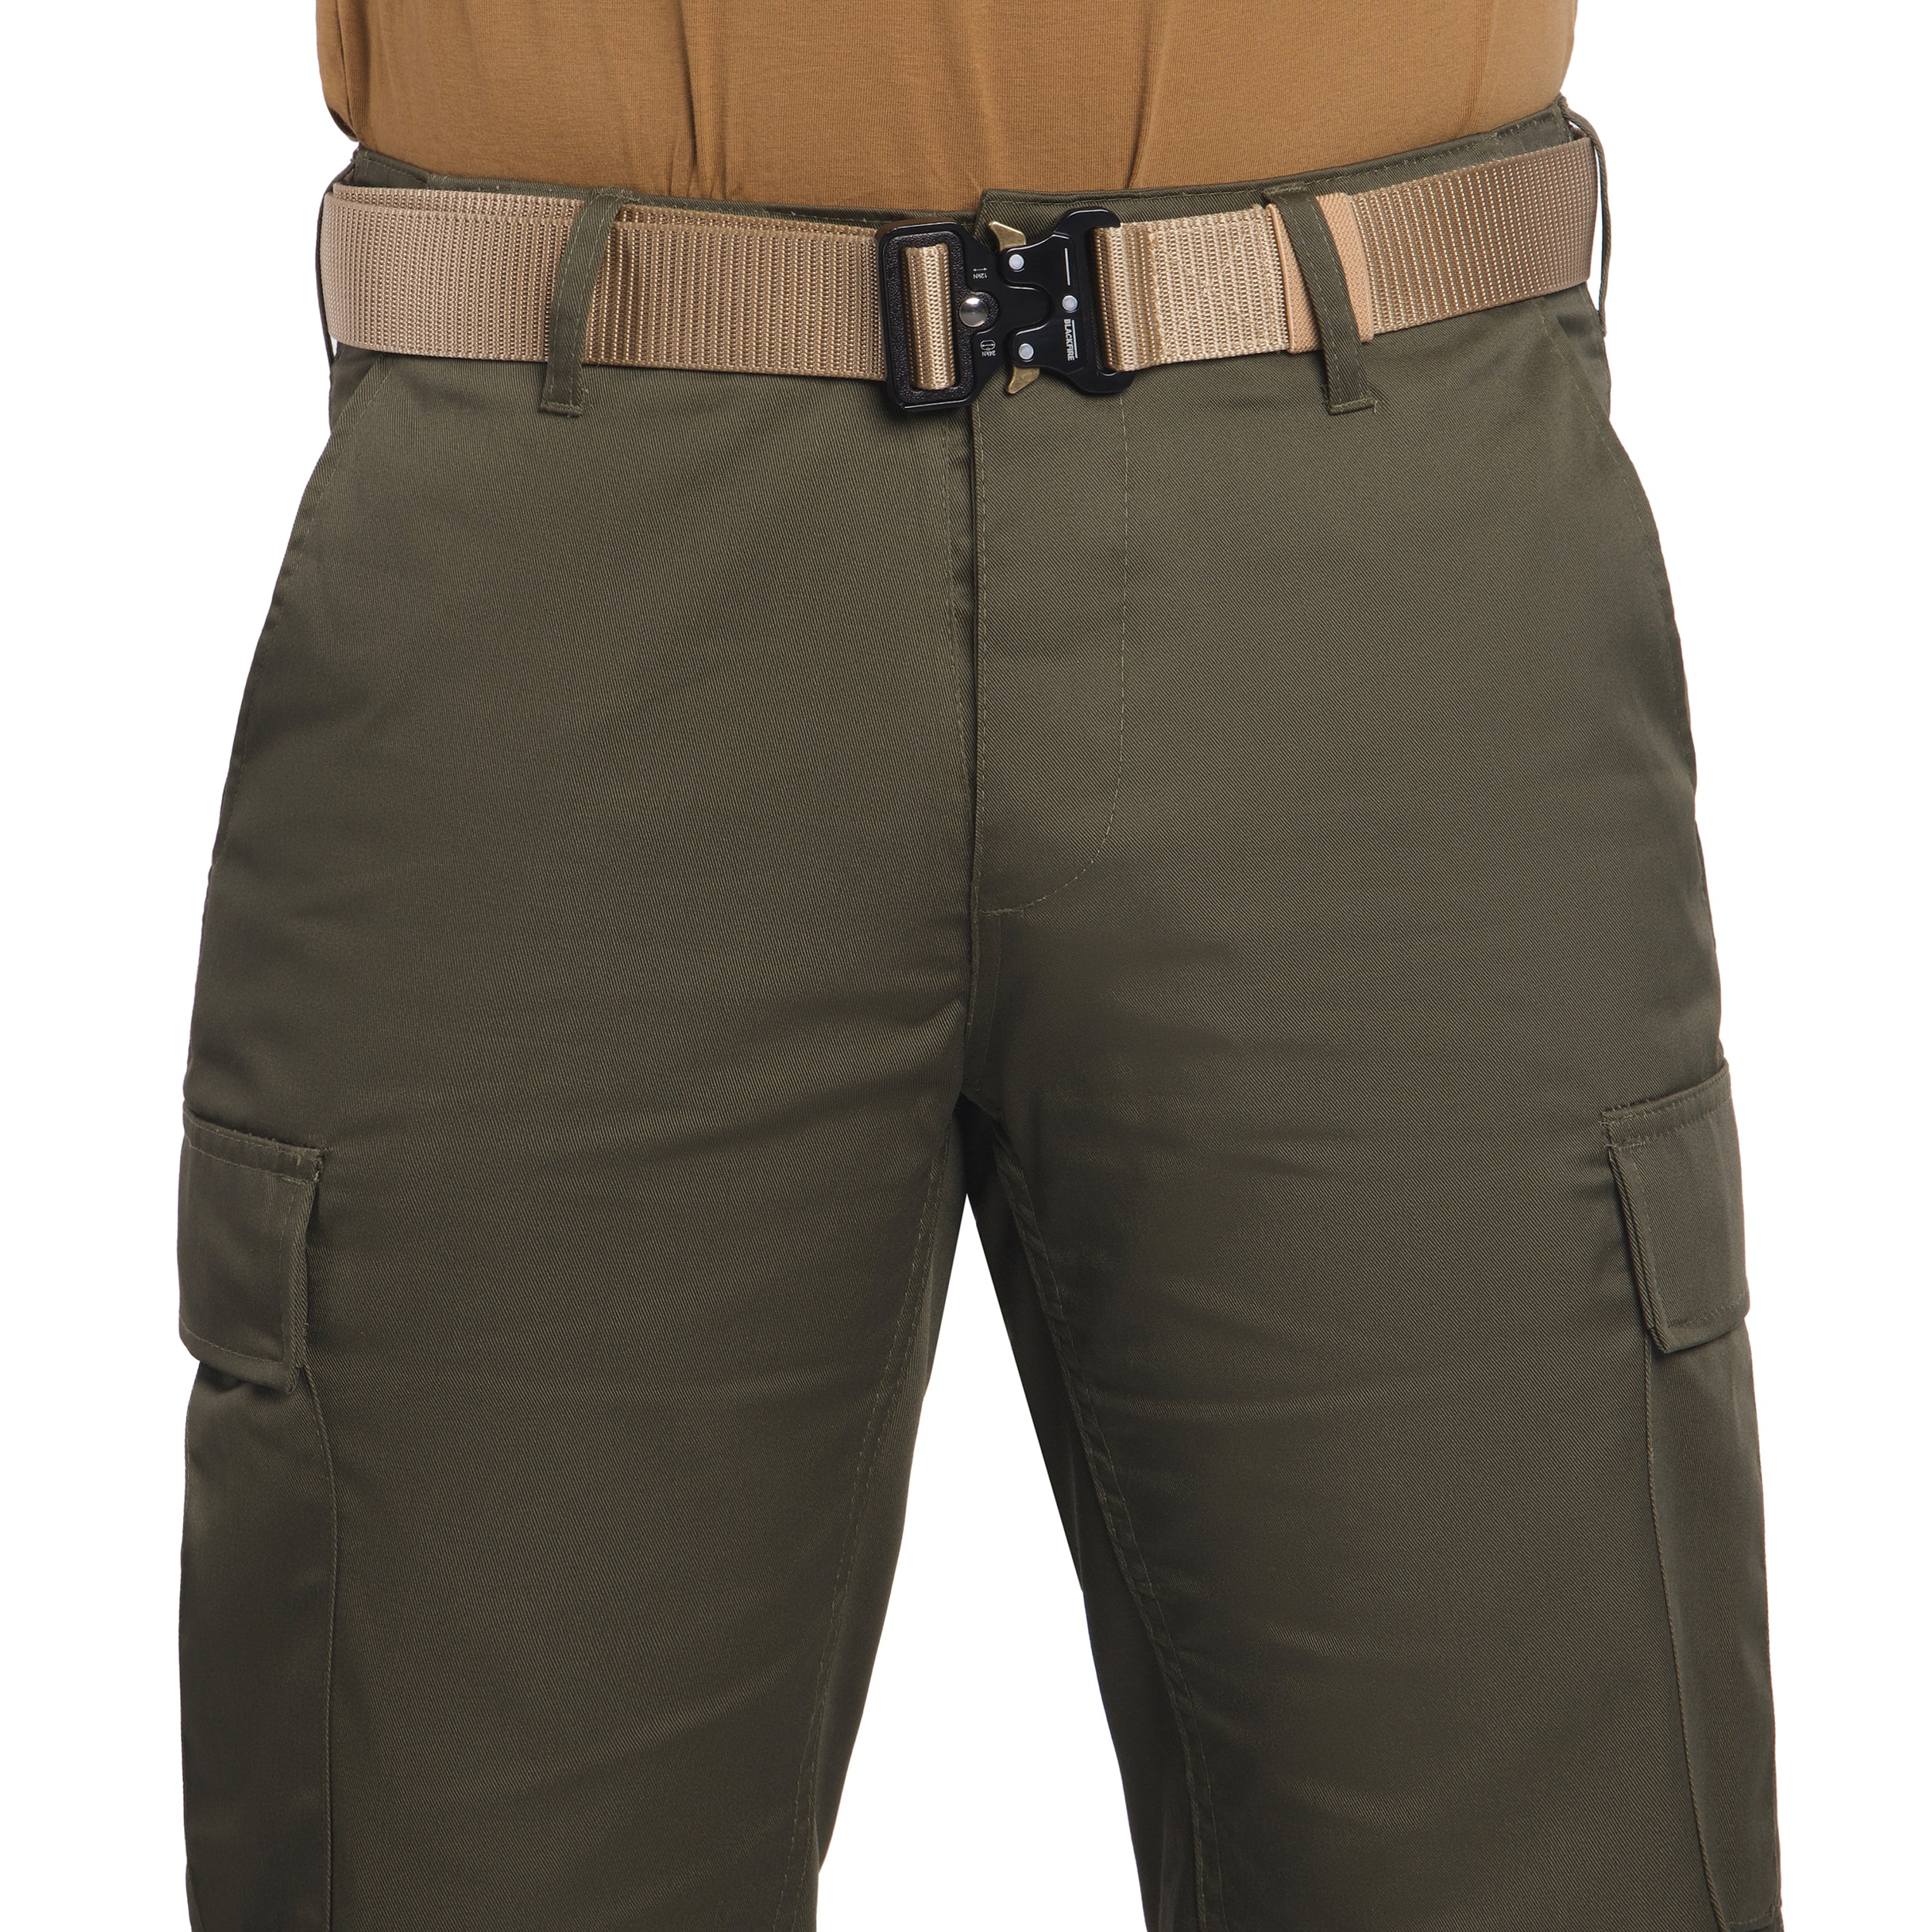 Spodnie wojskowe Mil-Tec US Ranger BDU Straight Cut - Olive